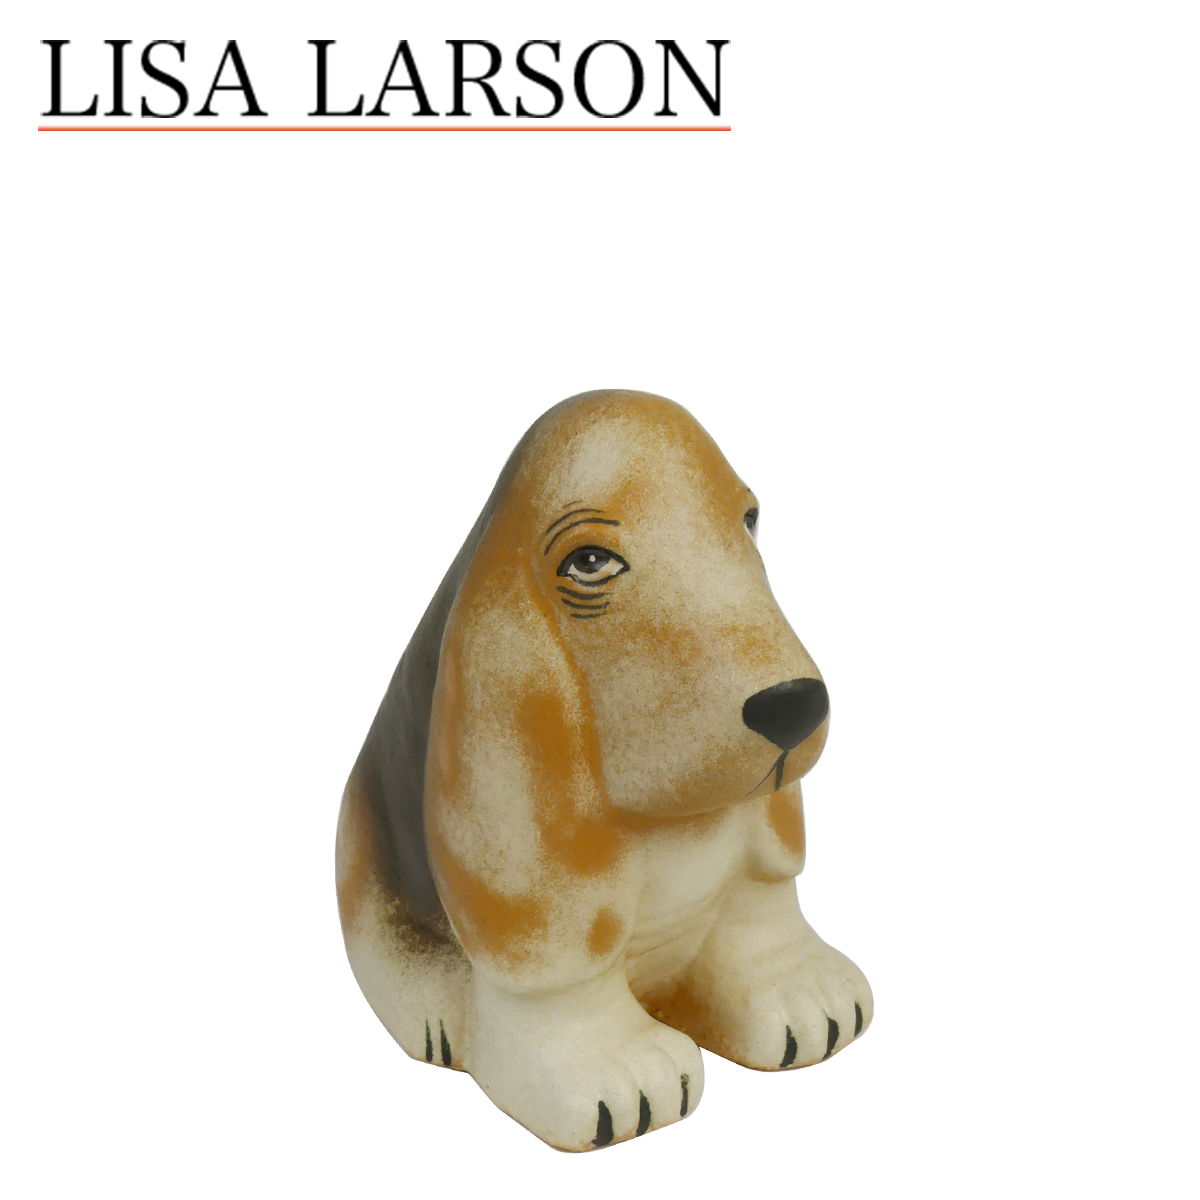 楽天市場 置物リサ ラーソン リサラーソン ケンネル バセット 動物 Lisalarson Lisa Larson Kennel Basset バセットハウンド 犬 陶器 北欧 オブジェ Daily 3